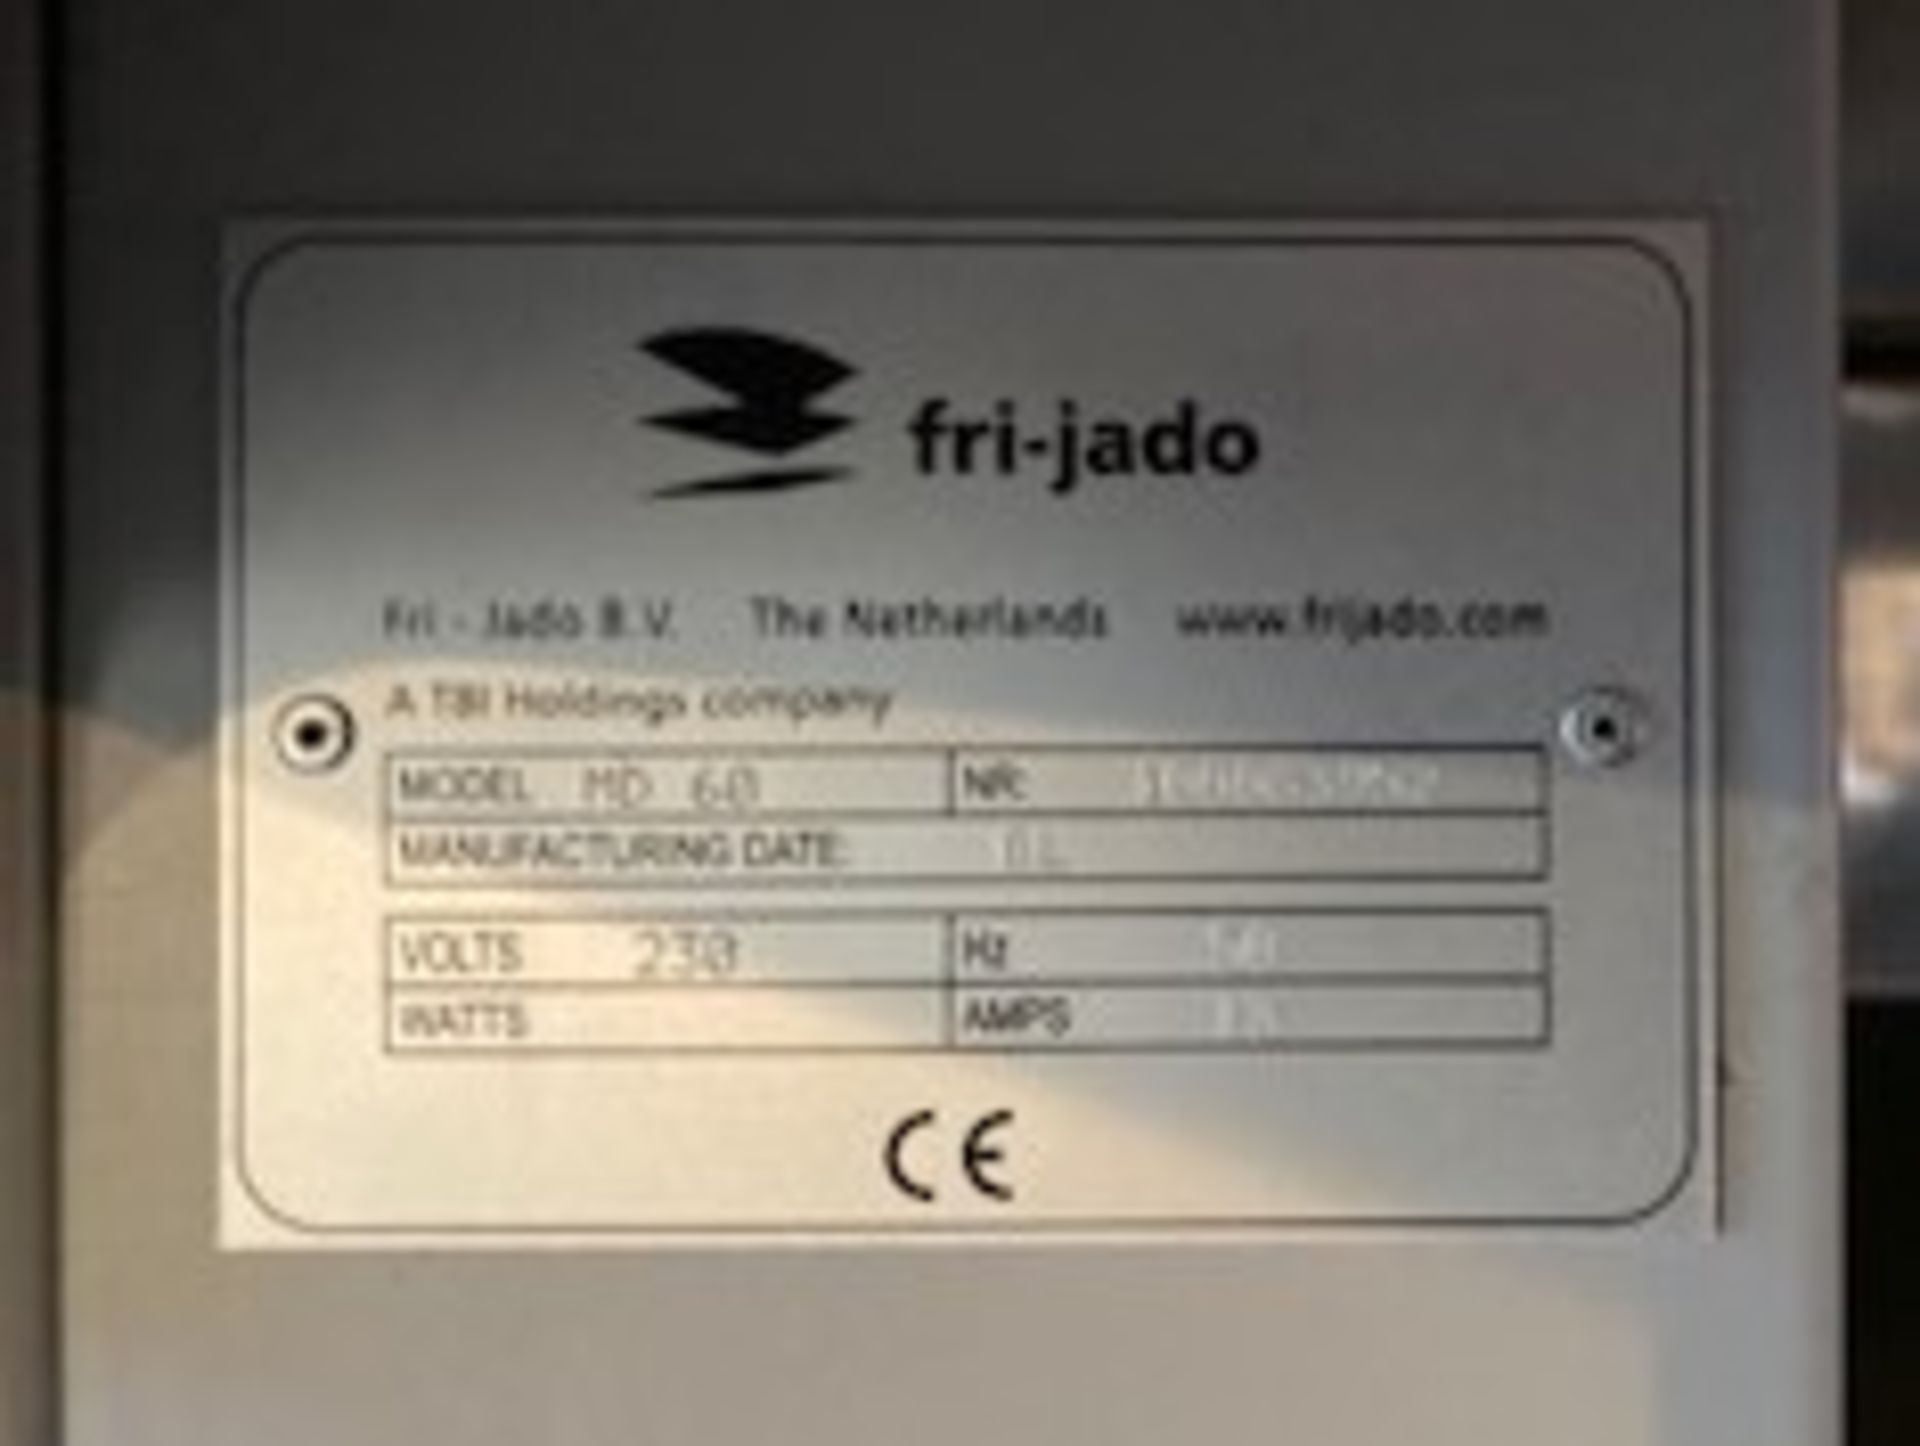 Fri-Jado MD 60 Multi Deck Heated Display - Image 5 of 5